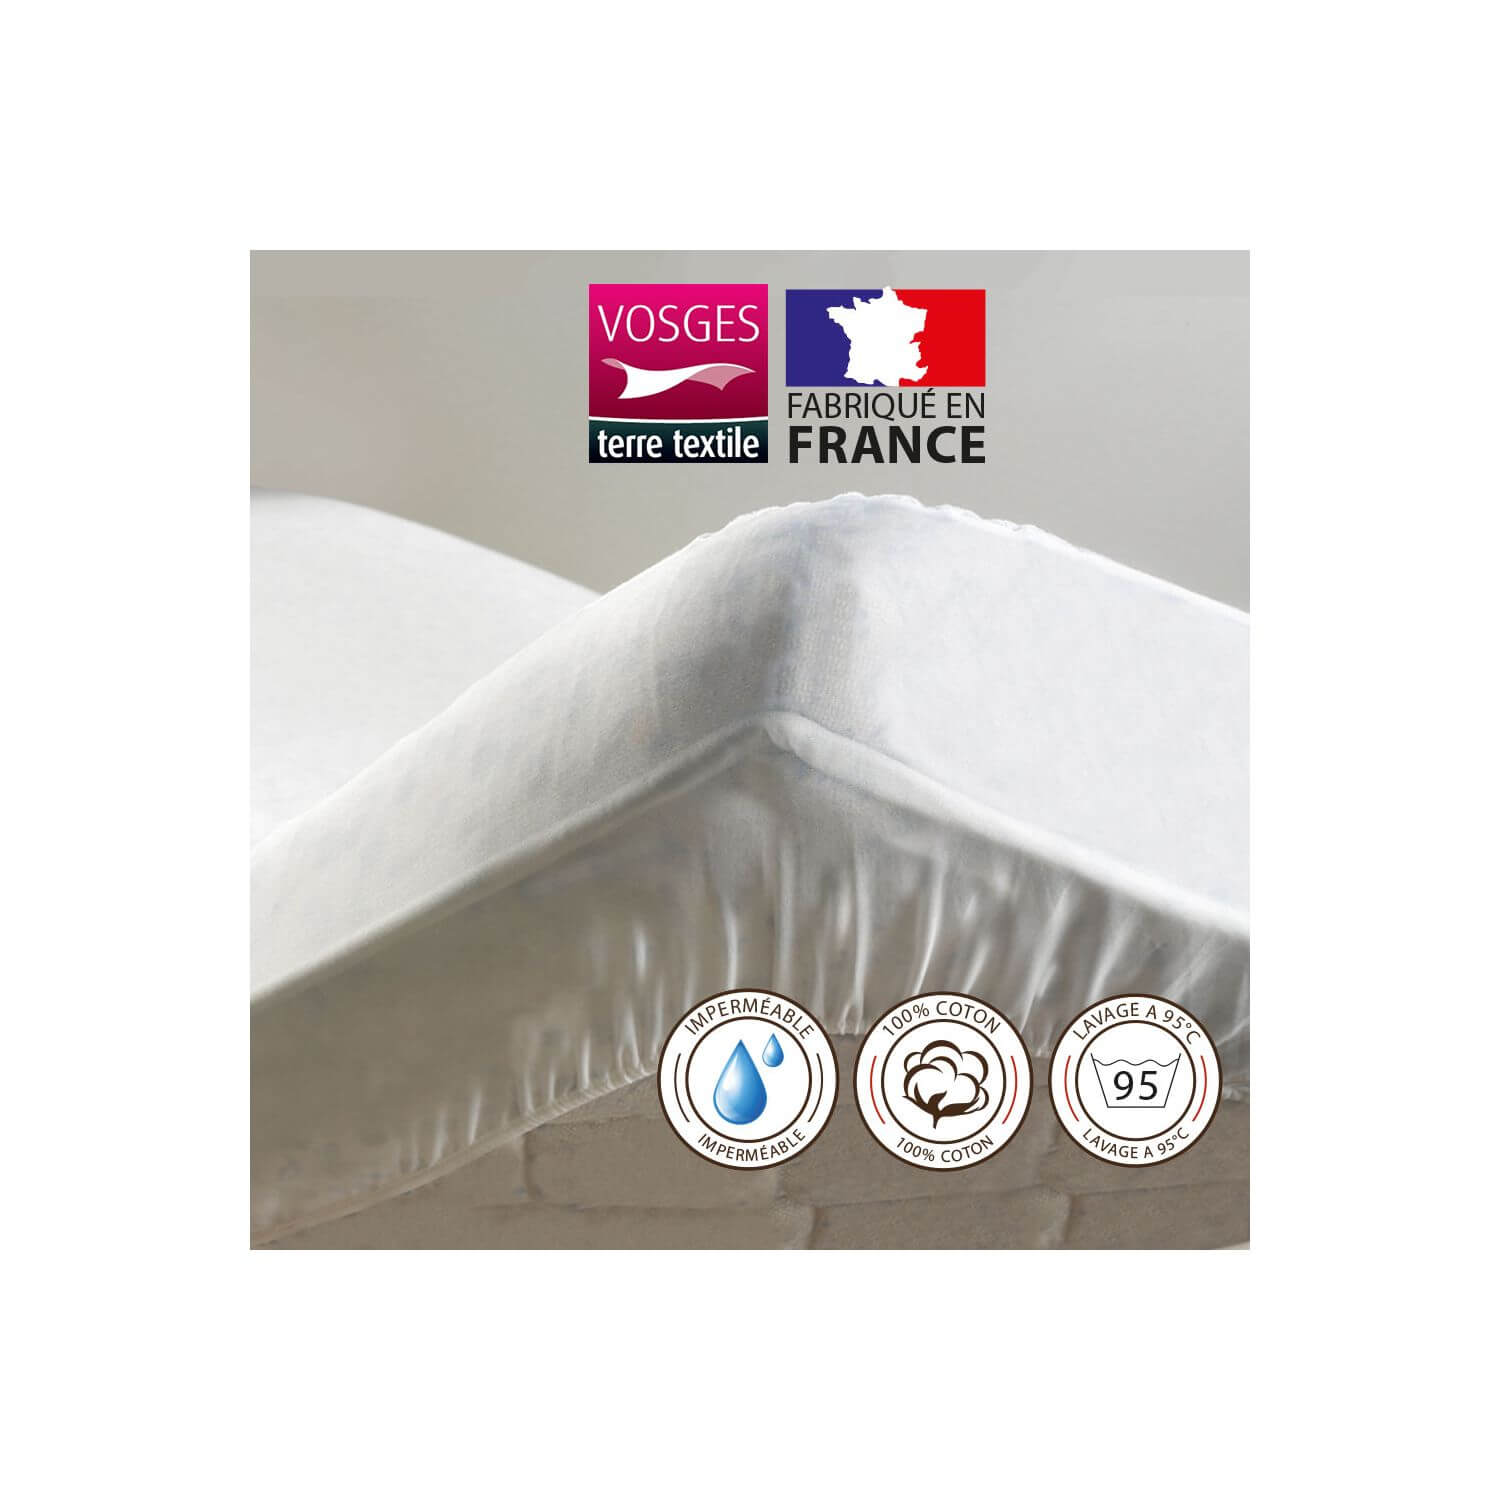 Alèse protège matelas molleton en coton blanc 180x200 cm PROTÈGE